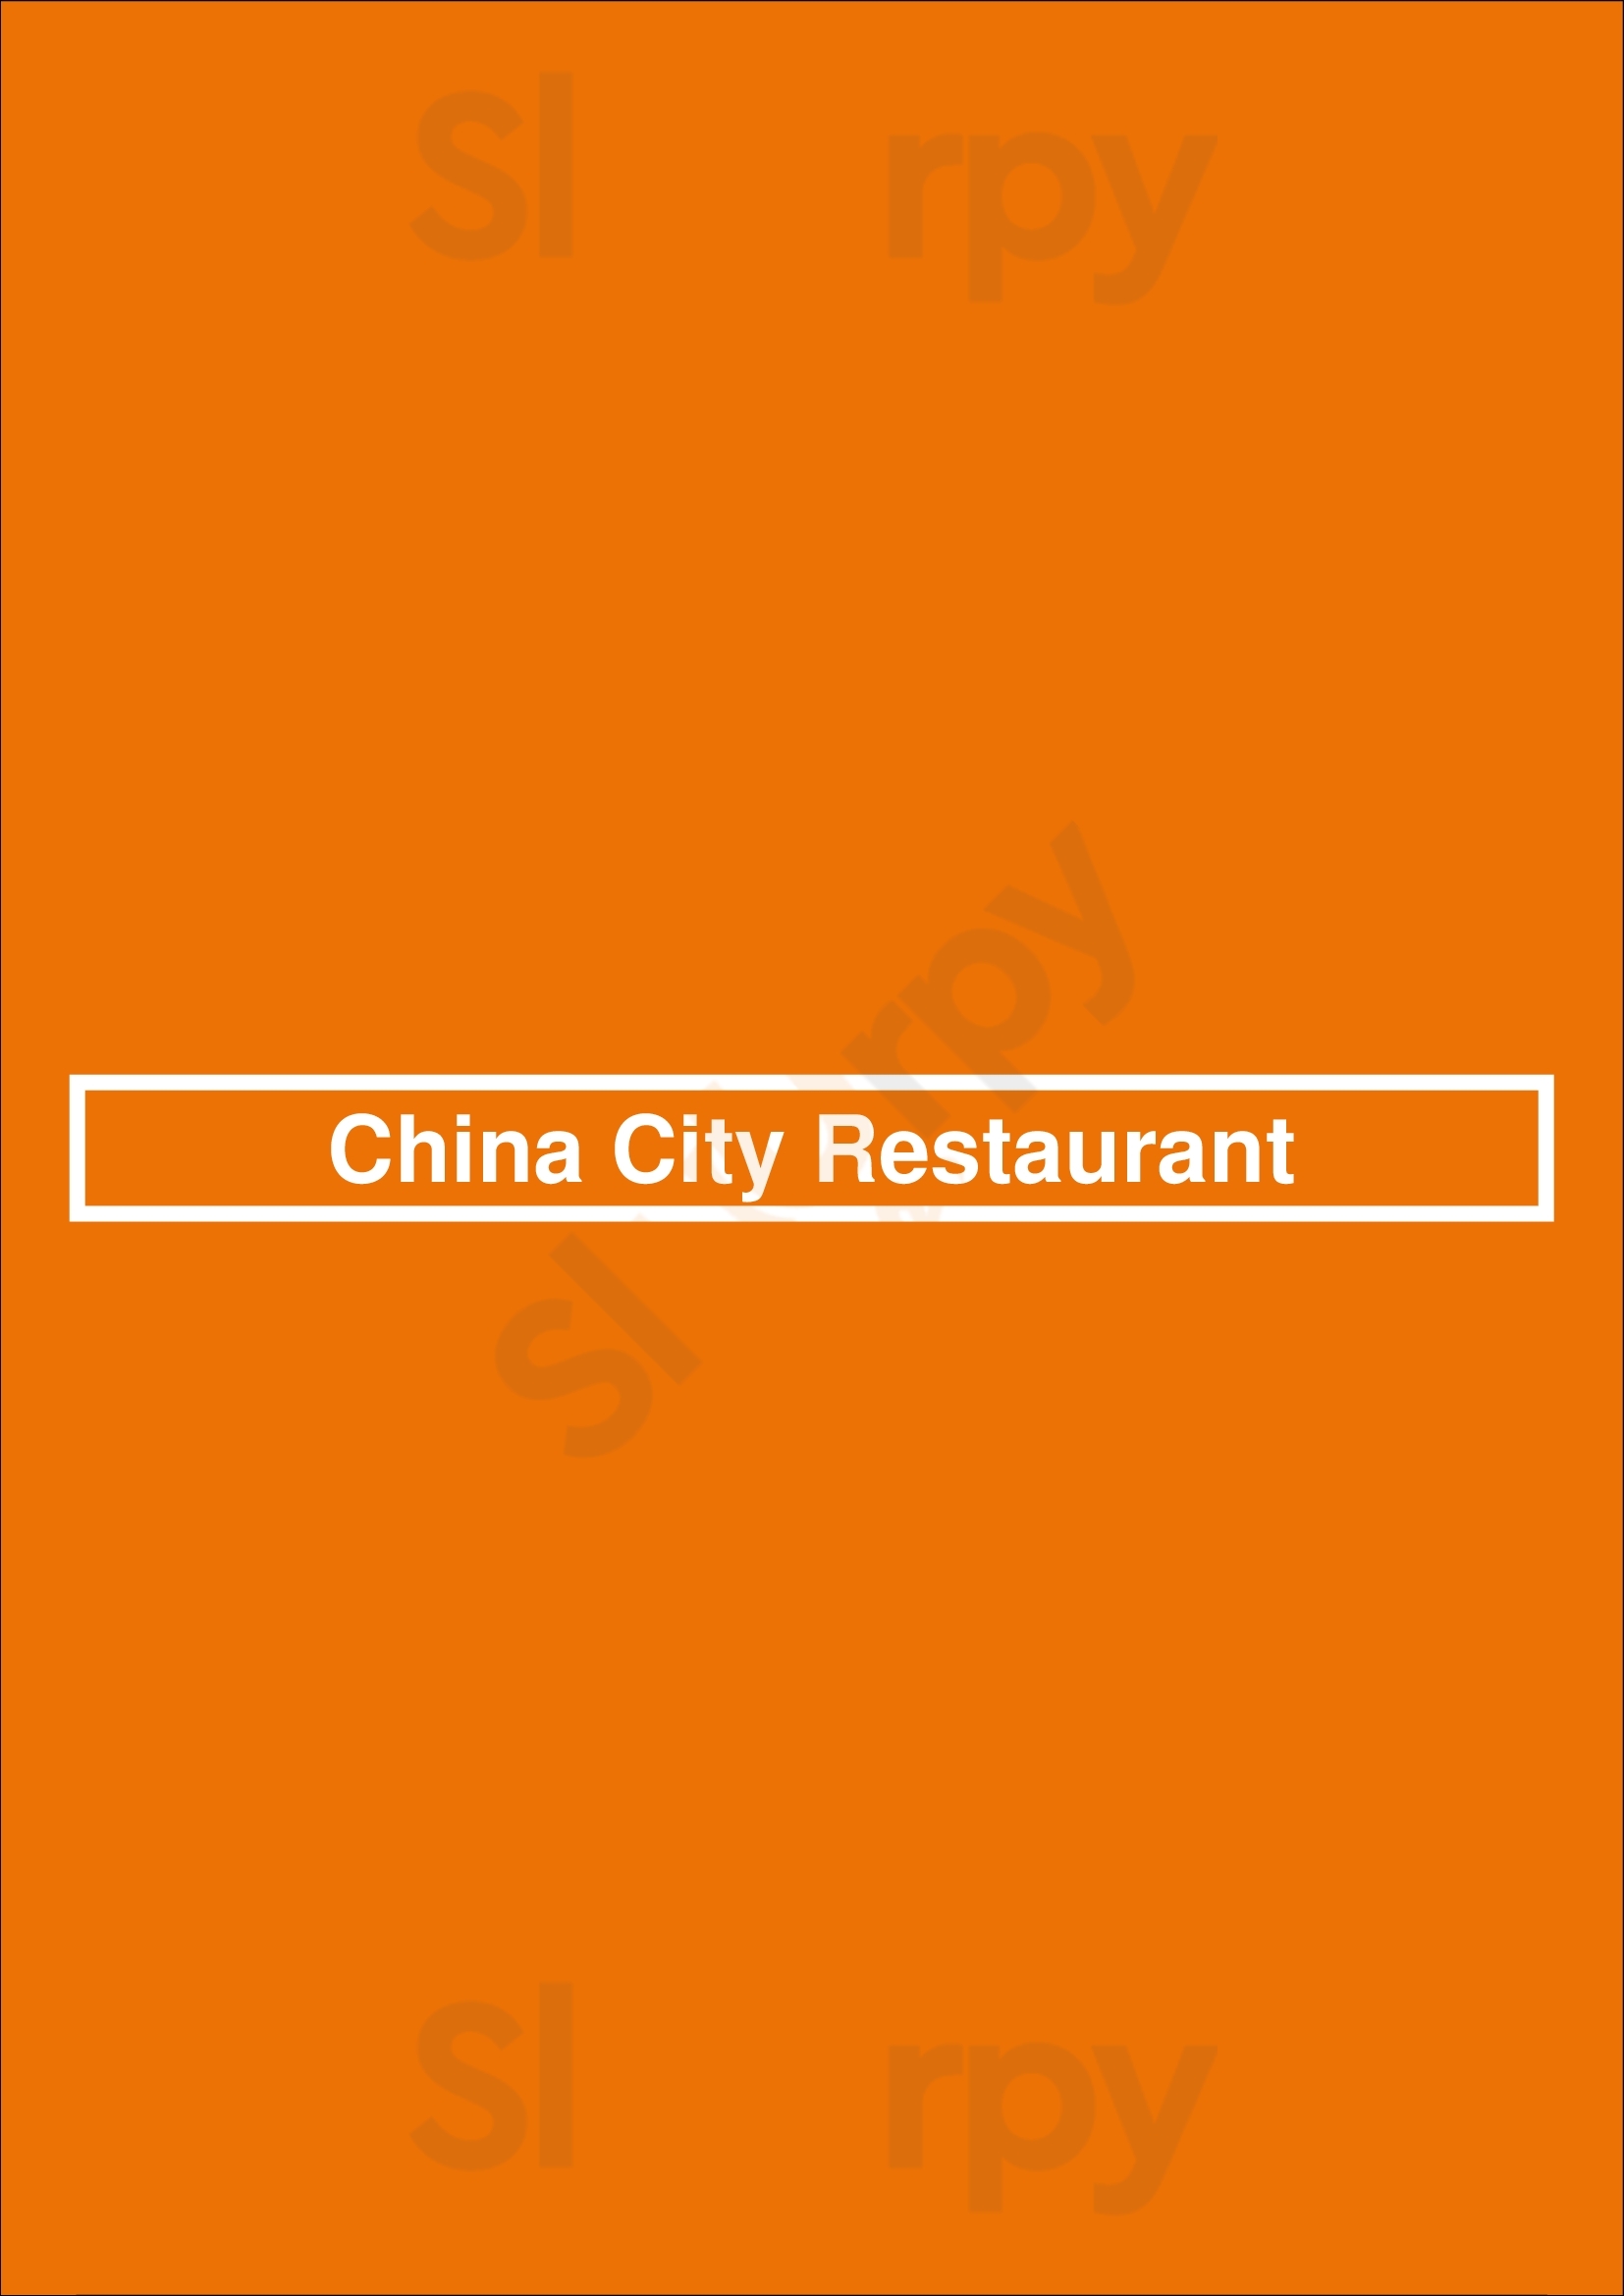 China City Restaurant Winnipeg Menu - 1